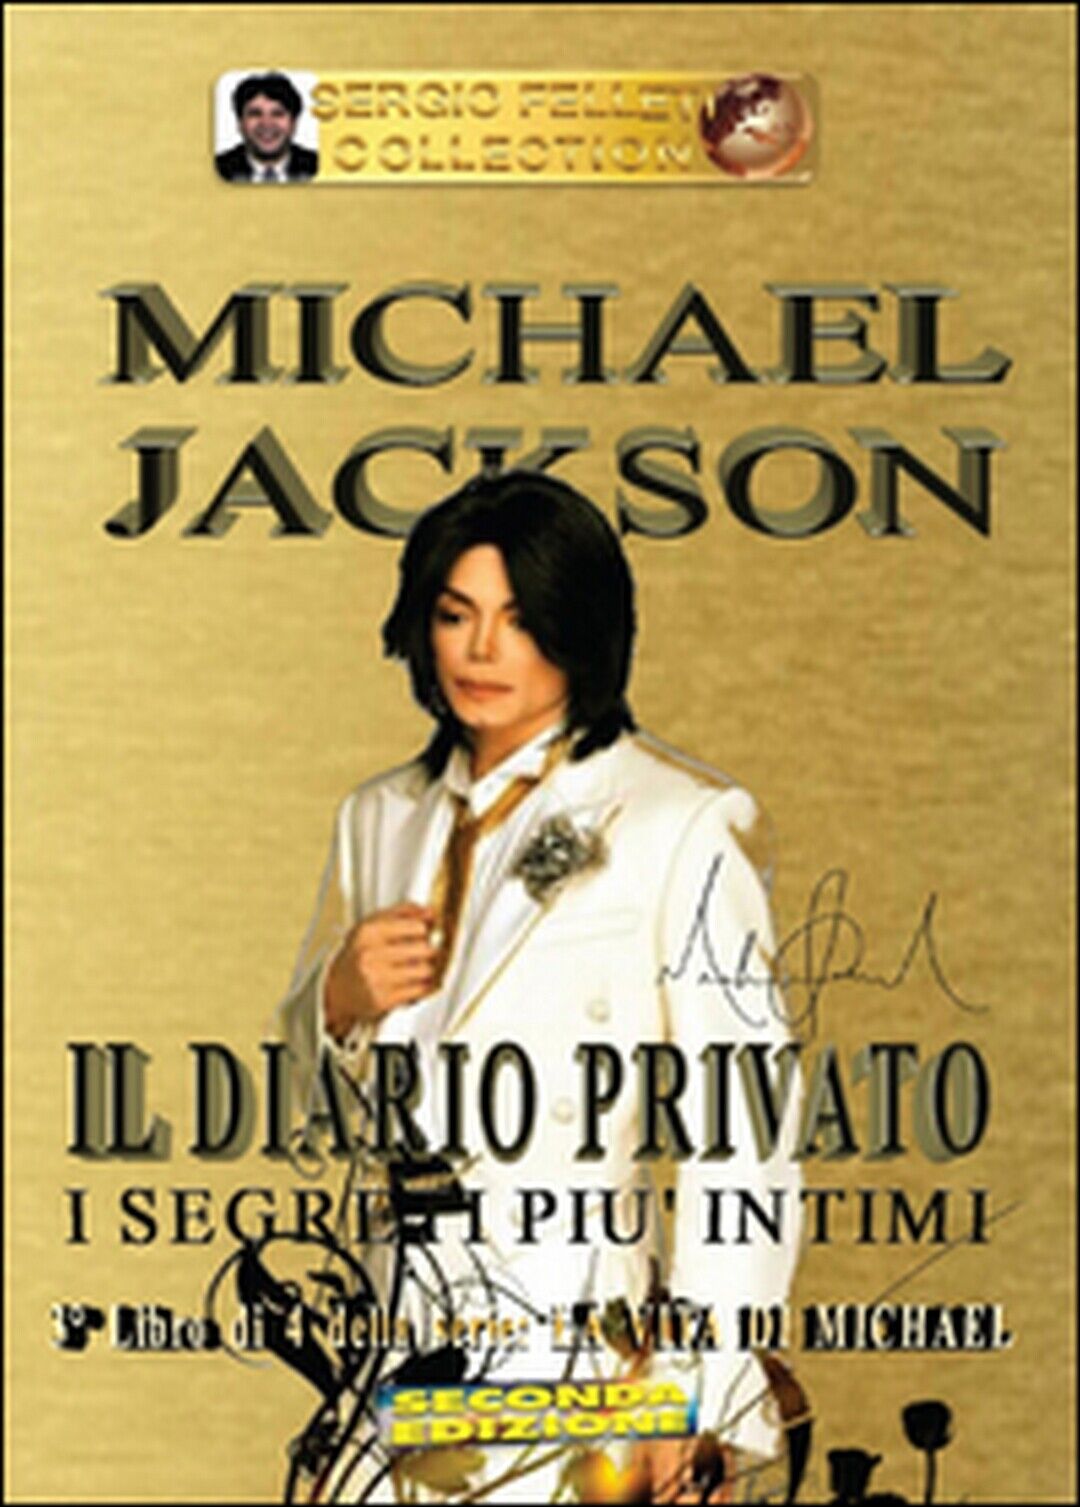 Michael Jackson. Il diario privato. I segreti pi? intimi Vol.3, Sergio Felleti libro usato